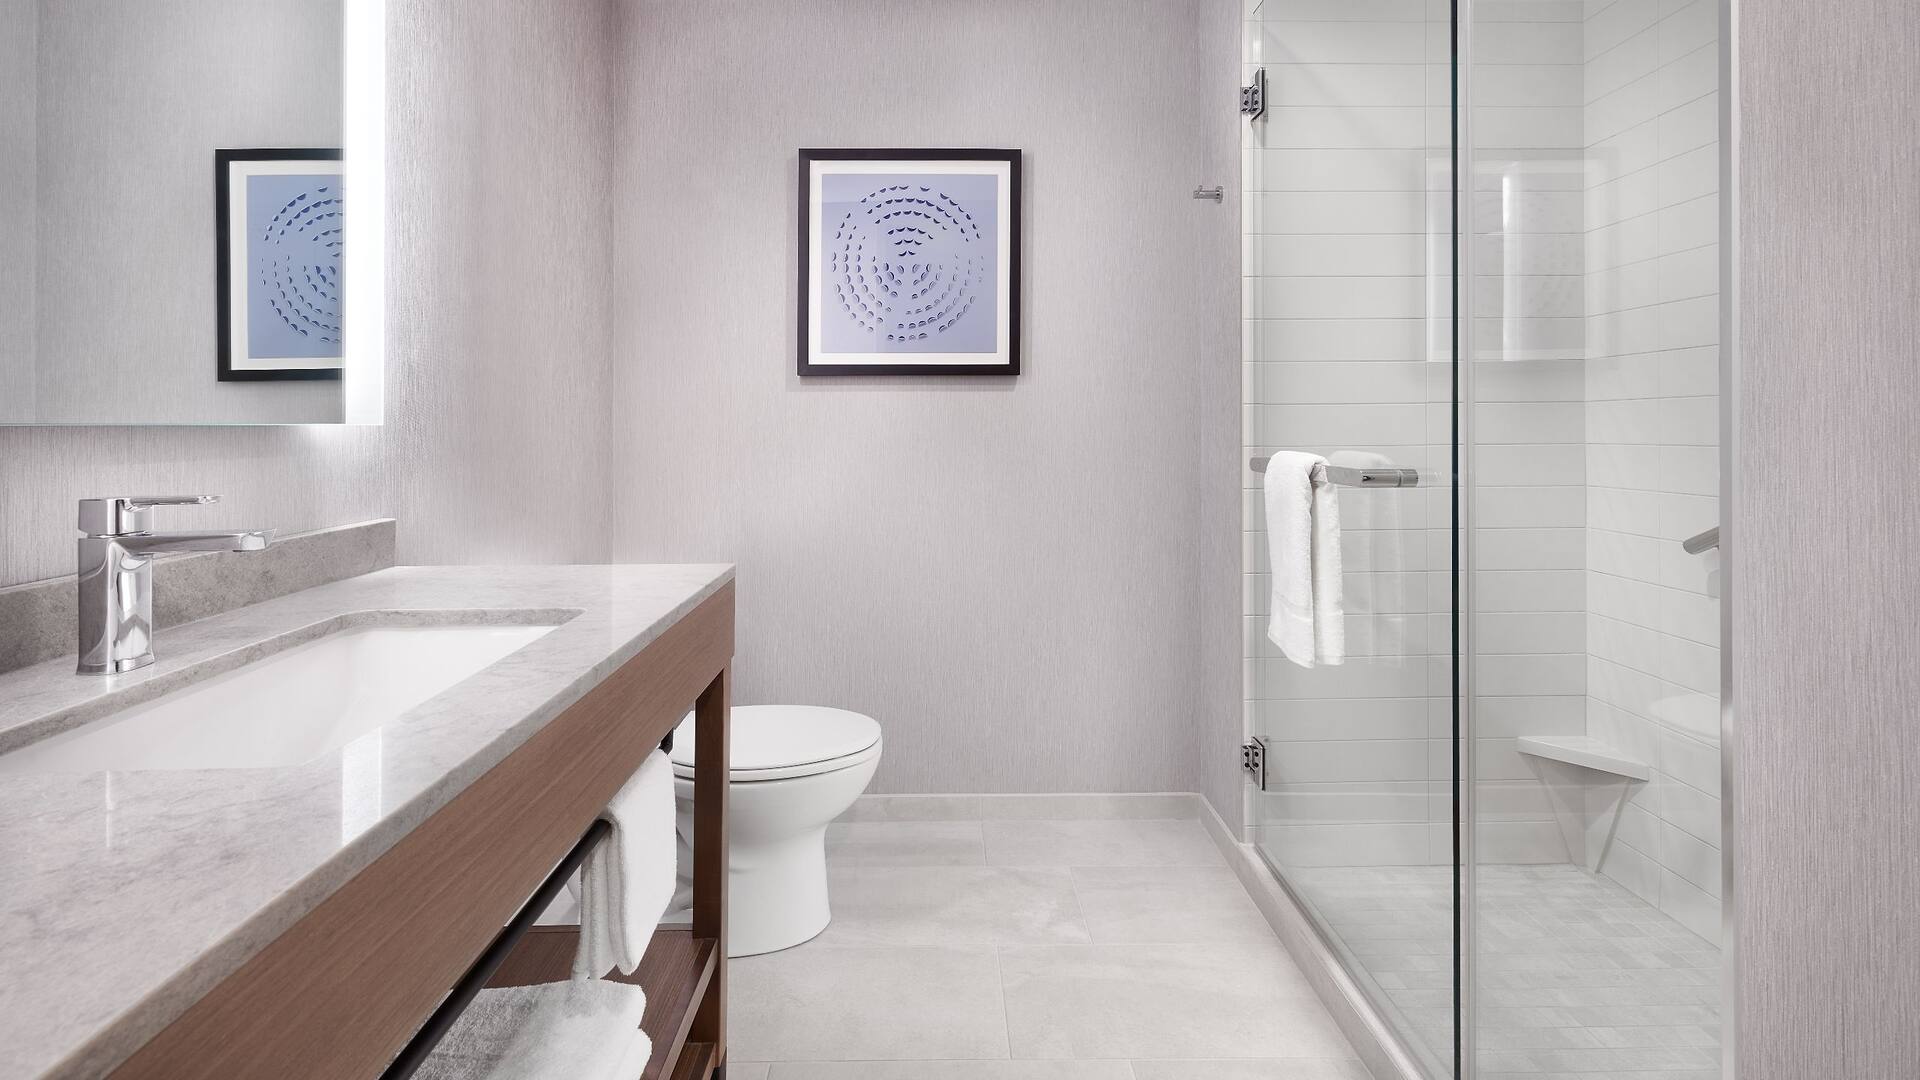 Guestroom Bathroom Shower Sink Towels View